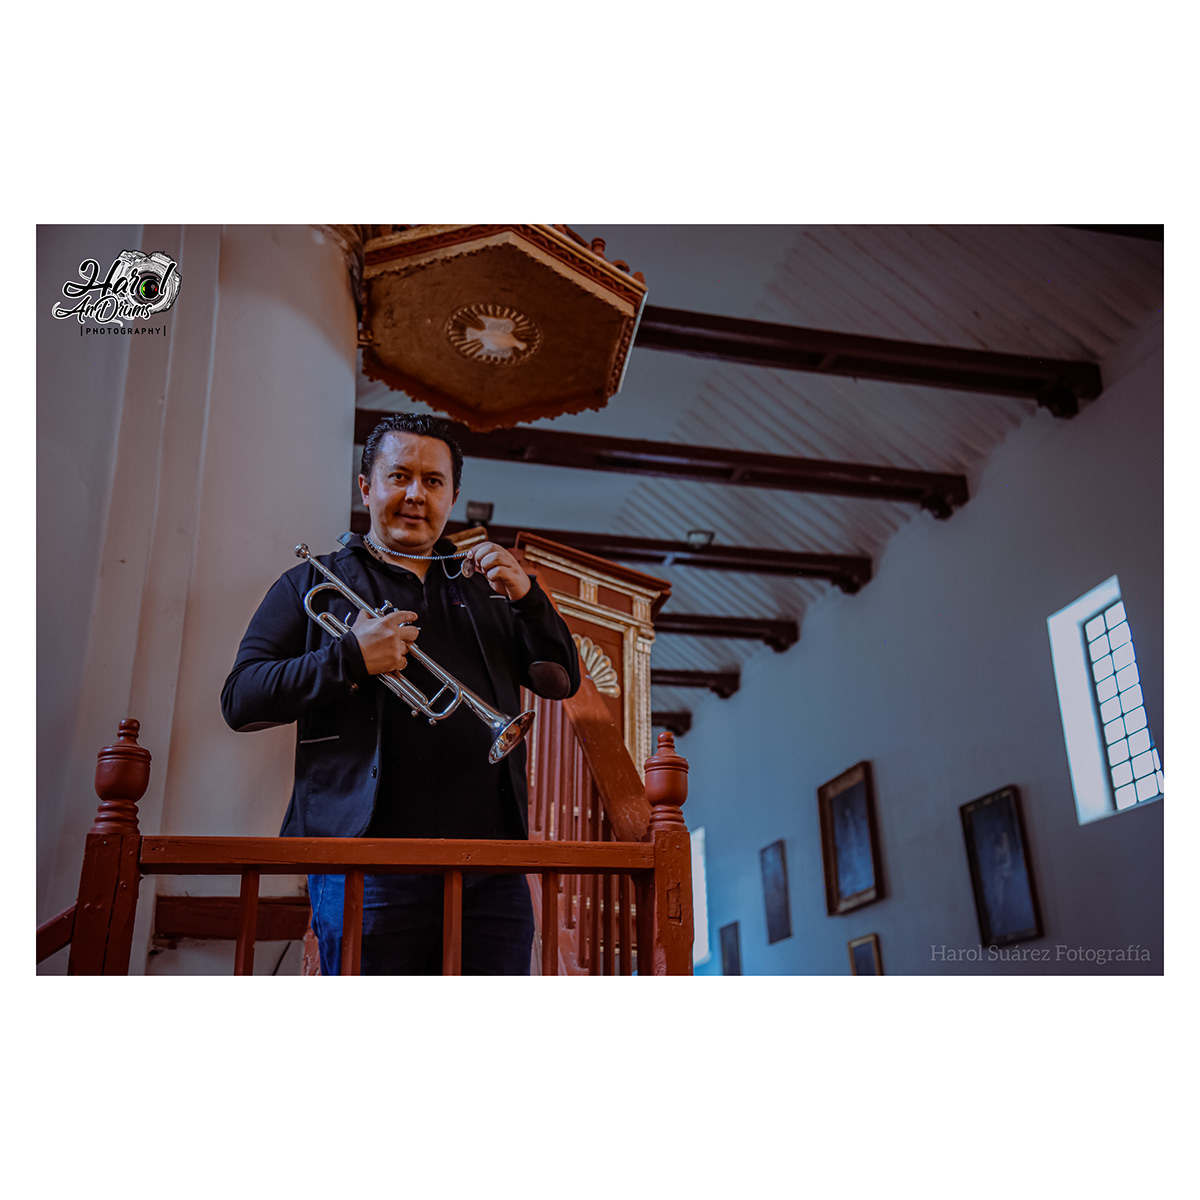 trompeta trumpet villa de leyva colombia Harol suarez fotografia villahit films Boyaca fotografia villa de leyva villahitfilms